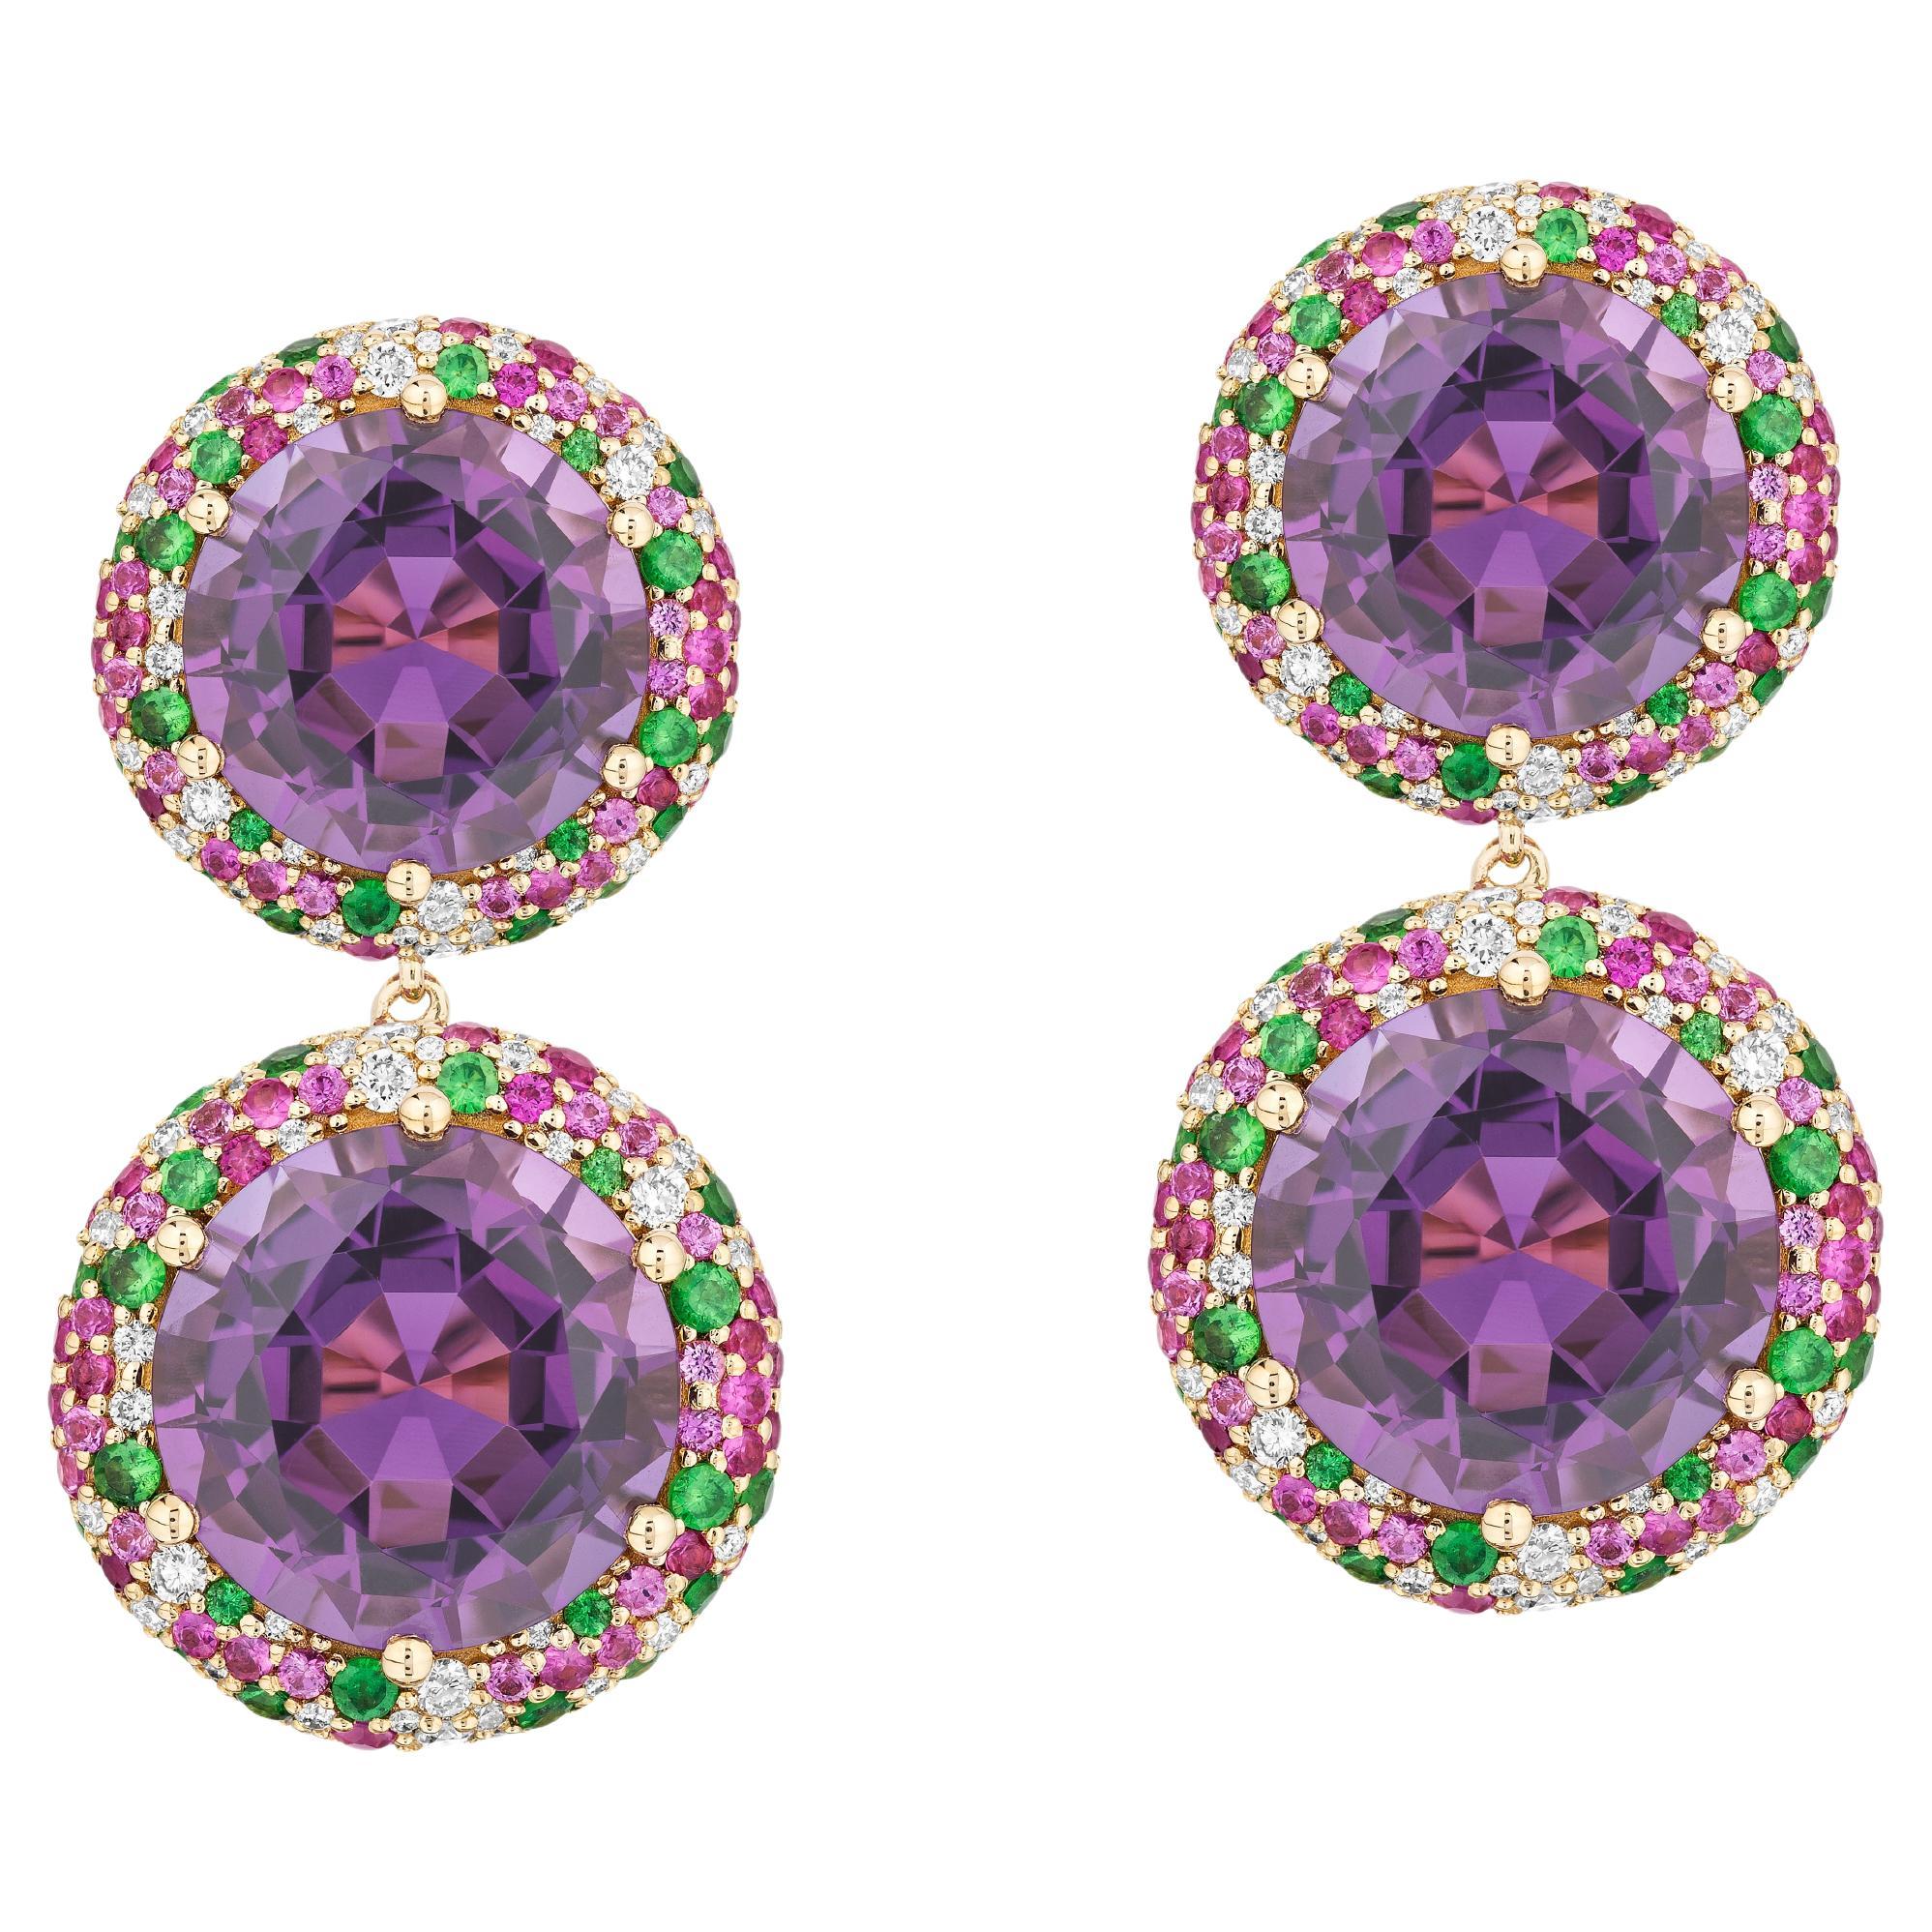 Ohrringe aus Goshwara mit 2 Reihen Amethyst mit Diamanten, rosa Saphiren und Tsavorit